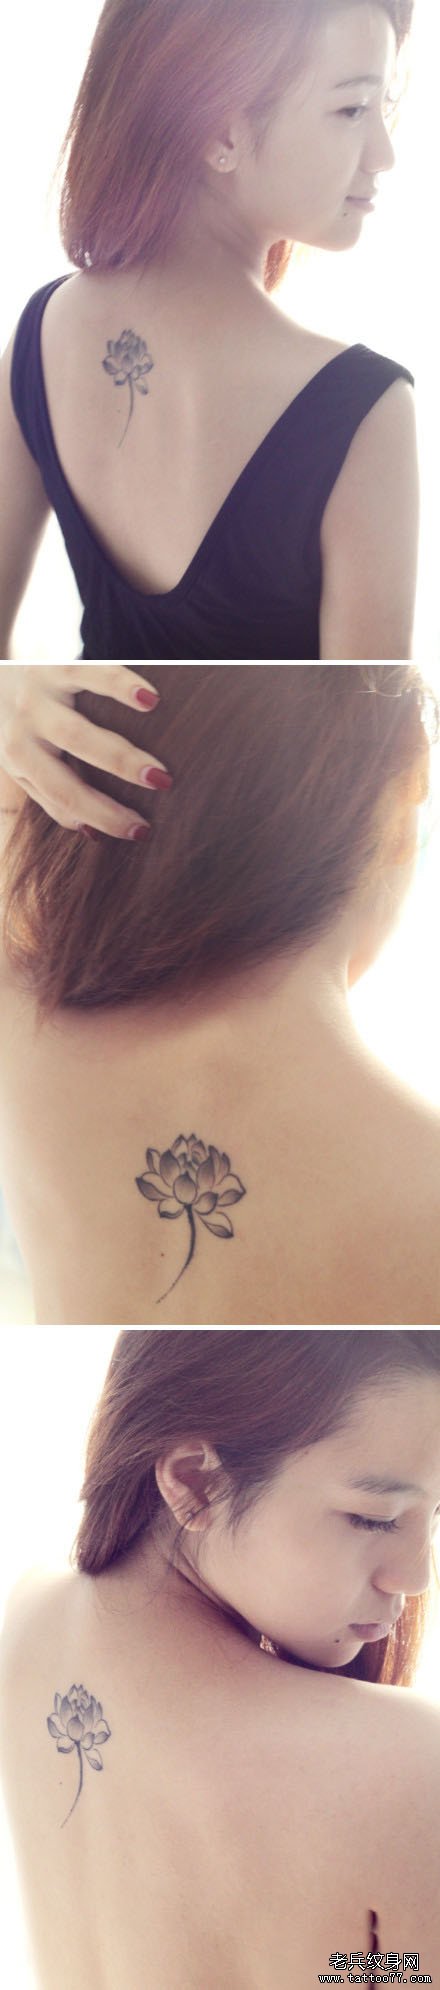 美女背部时尚精美的黑白莲花纹身图案